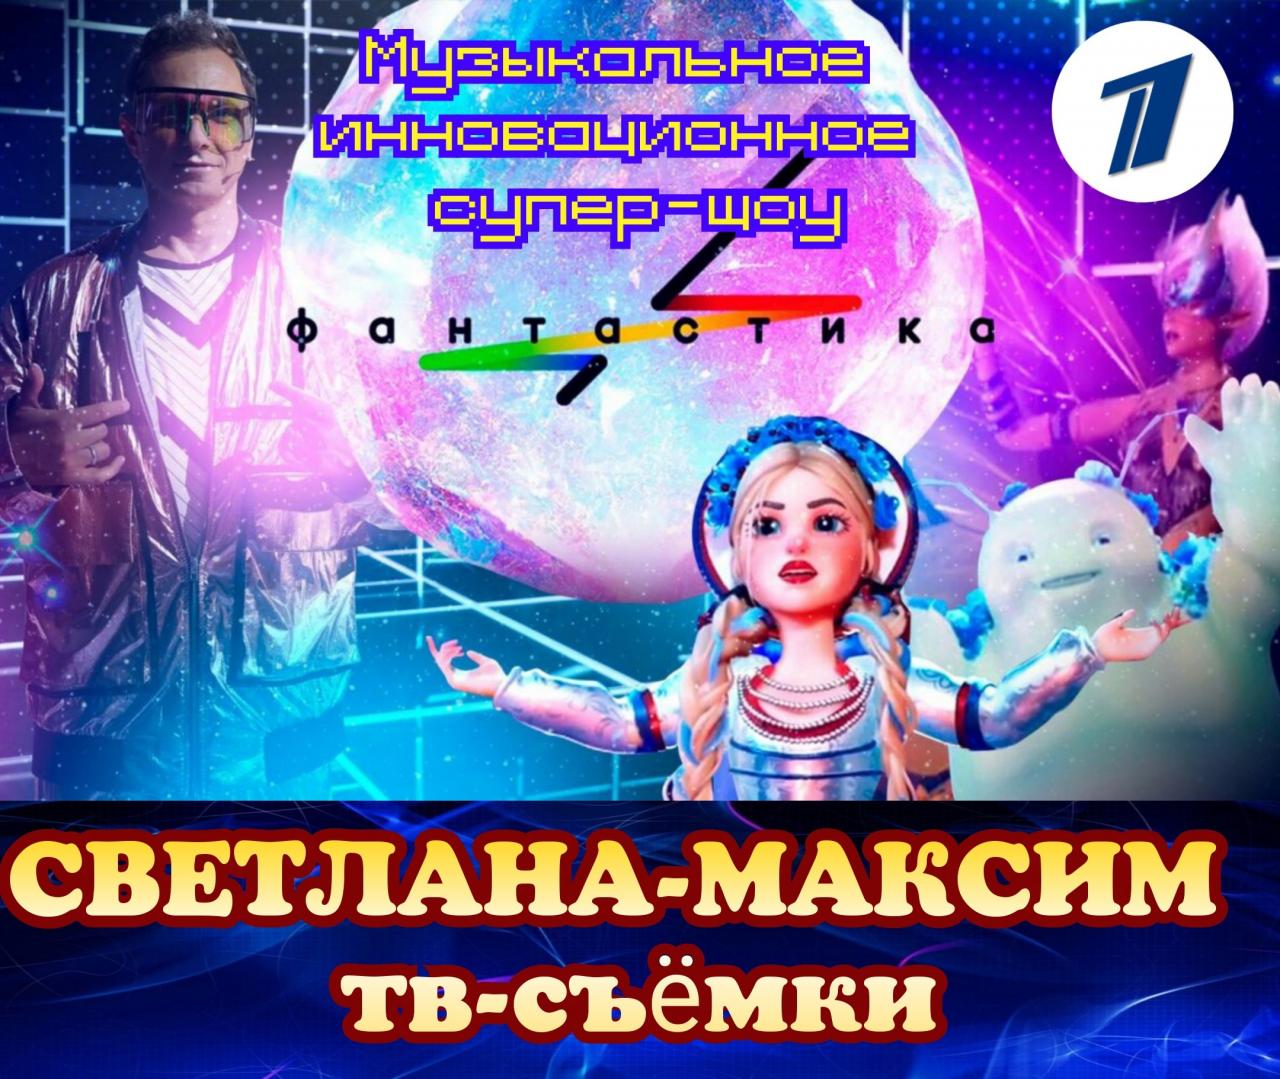 7, 8 ноября музыкальное супер-шоу "ФАНТАСТИКА".